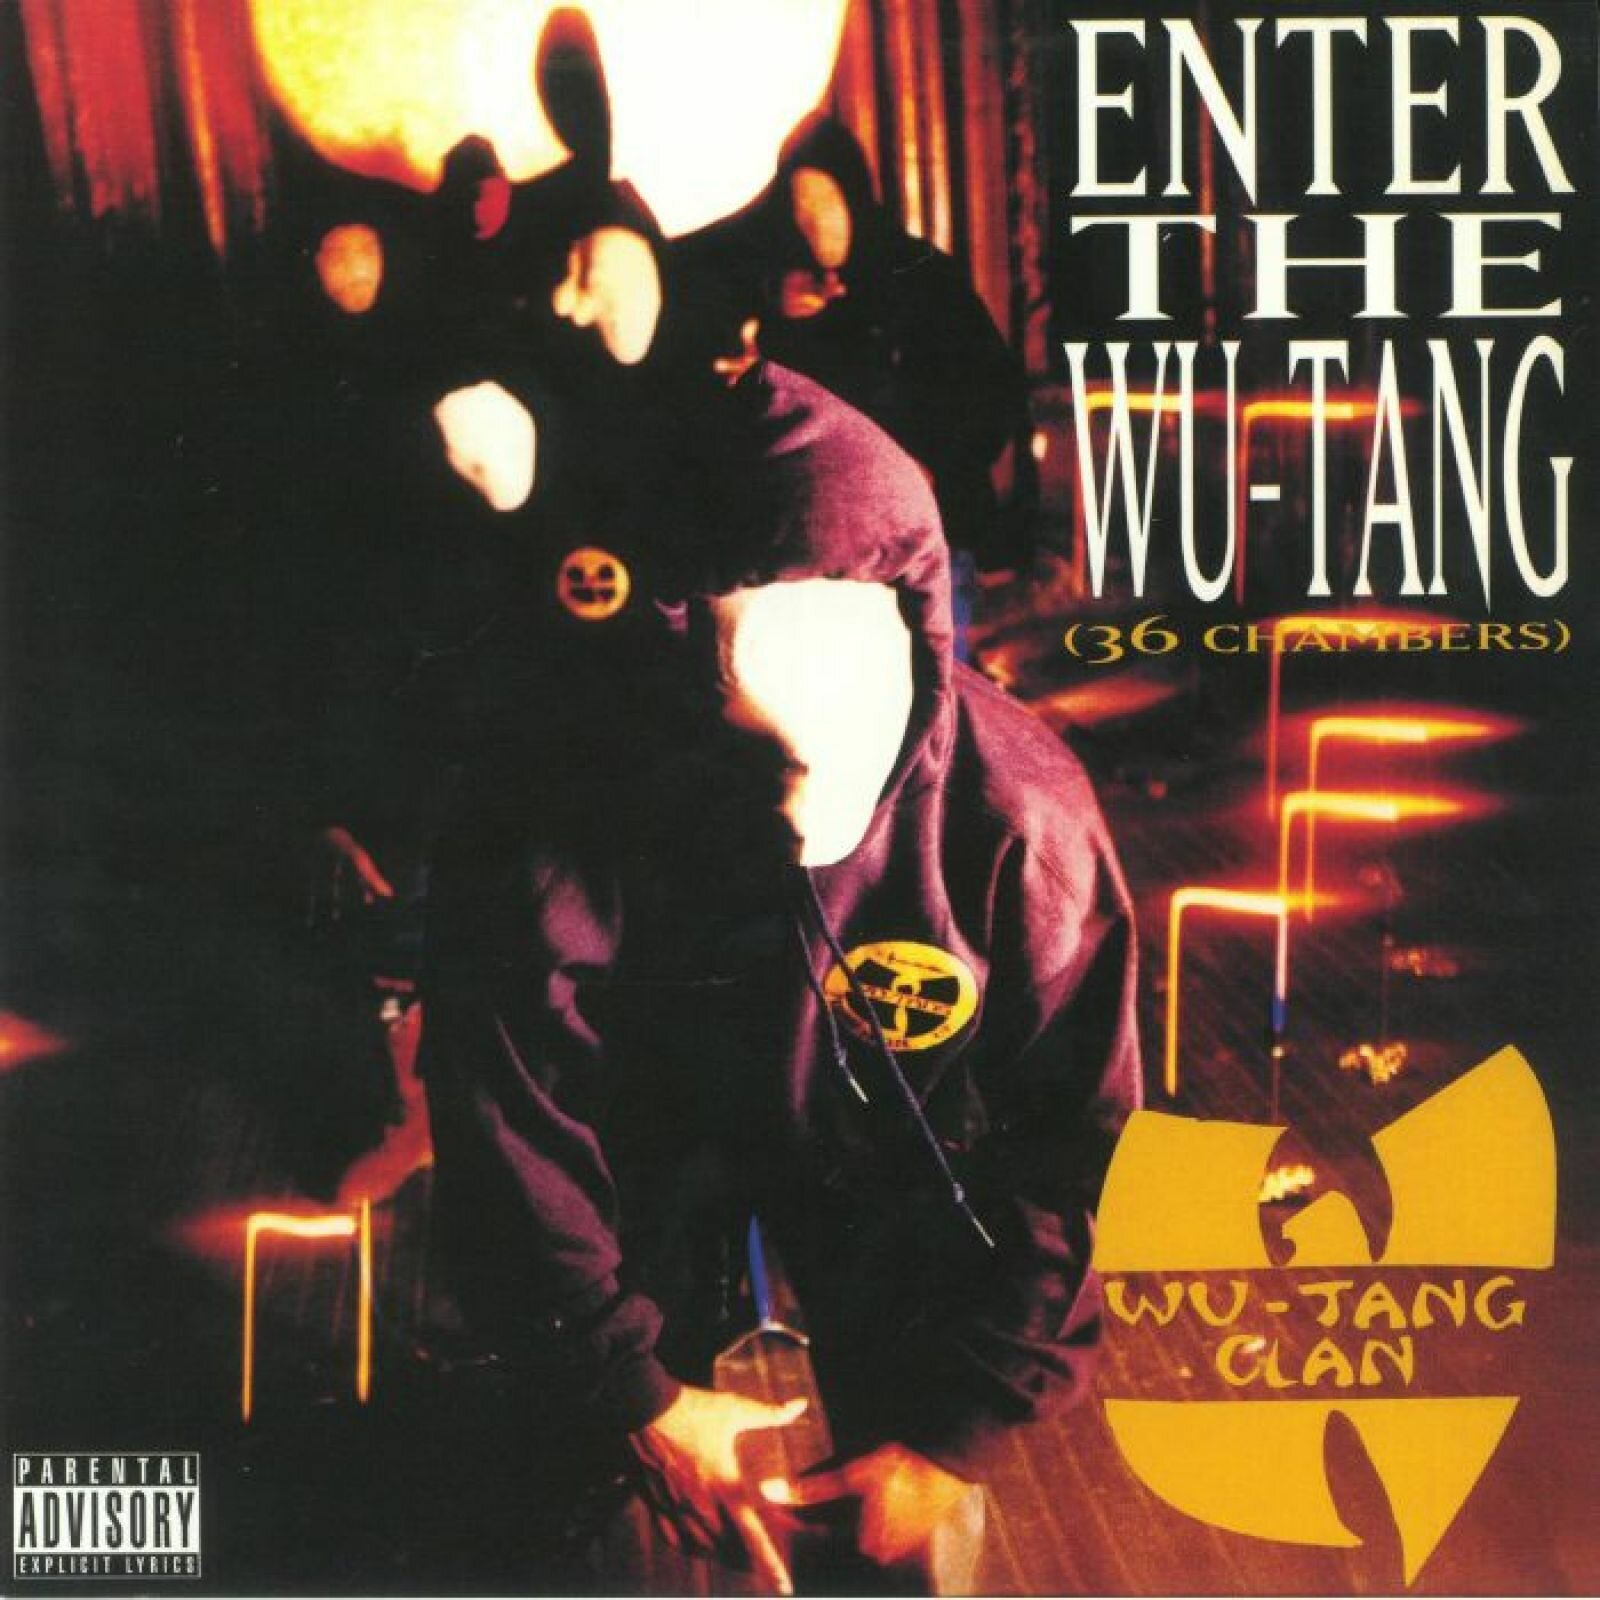 Виниловая пластинка Wu-Tang Clan "Enter The Wu-Tang Clan (36 Chambers)" Coloured Yellow LP